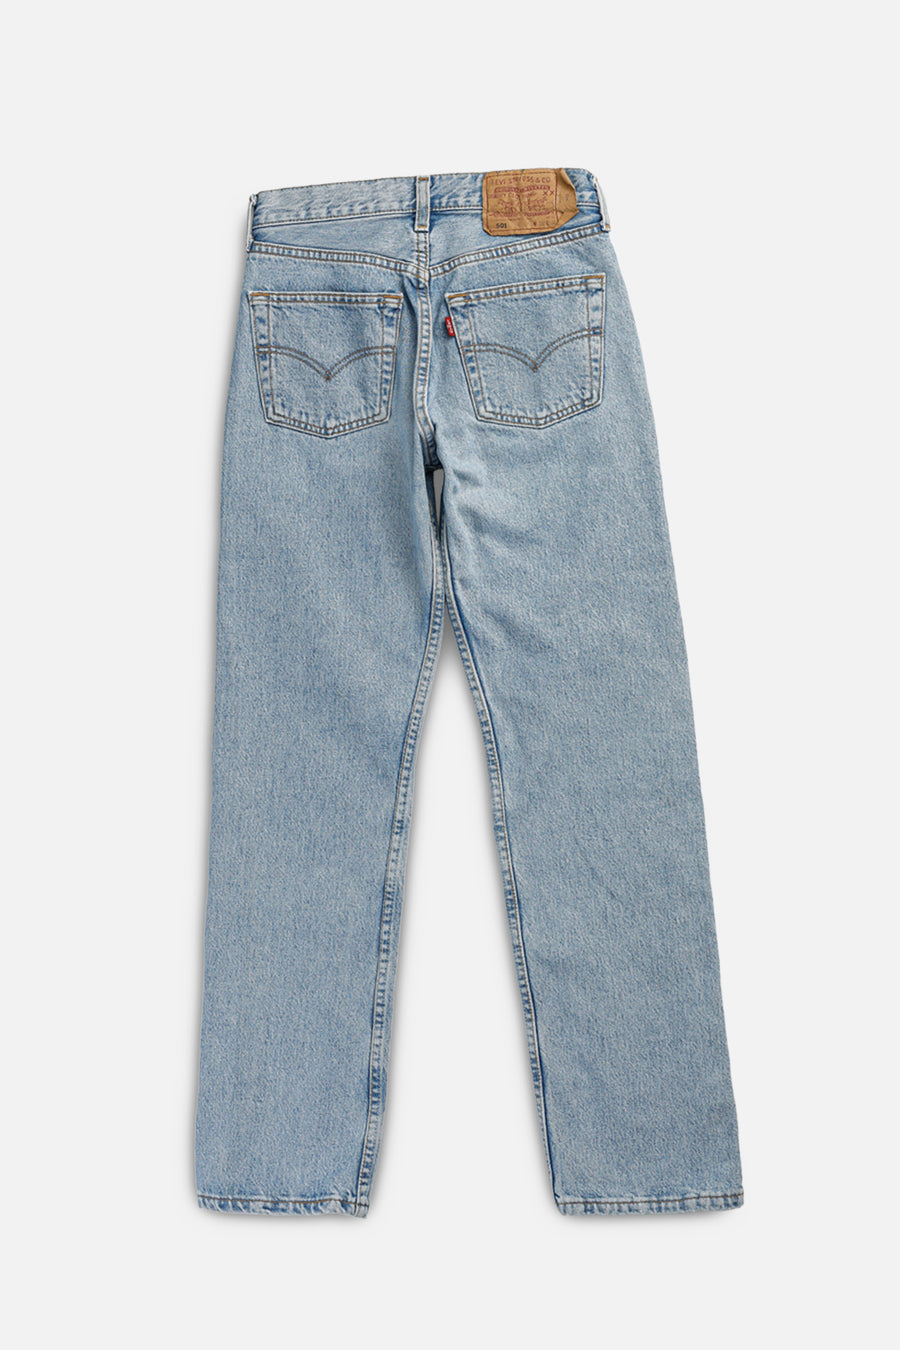 Vintage Levi's Denim Pants - W28 L30